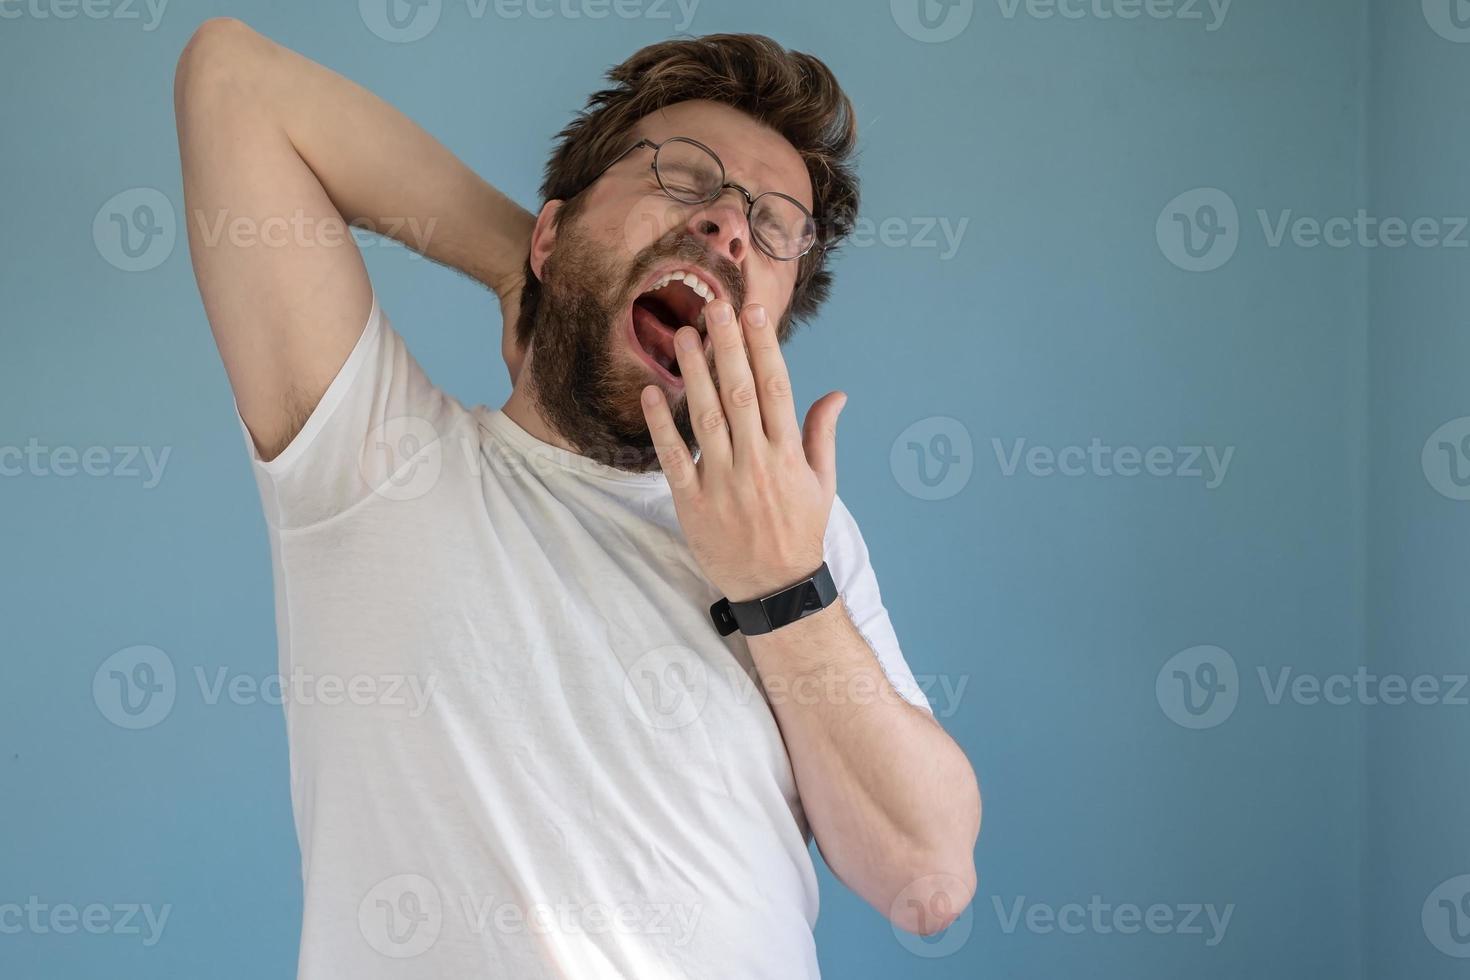 bärtiger mann mit brille und weißem t-shirt gähnt mit weit geöffnetem mund und bedeckt ihn mit der hand, er ist schläfrig oder gelangweilt. Blauer Hintergrund. foto